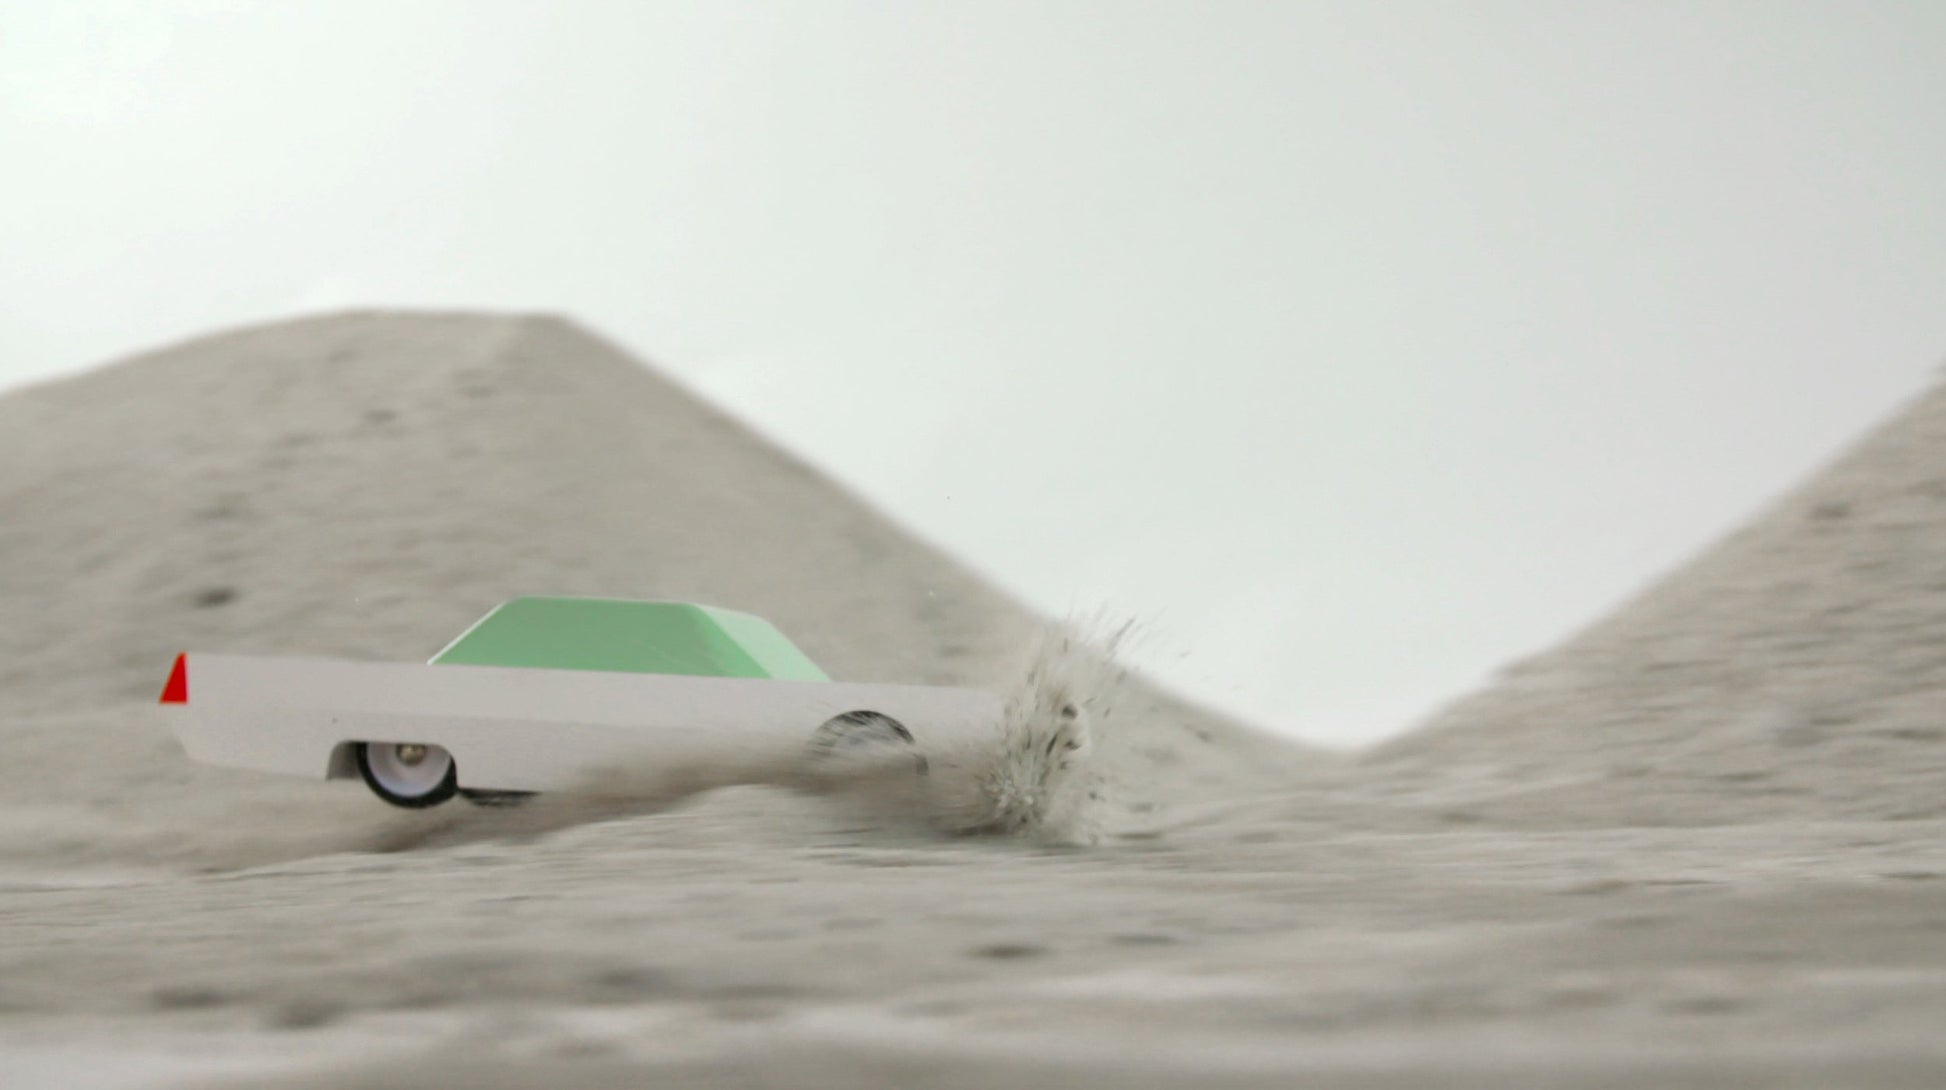 Whitebeast racing across sand